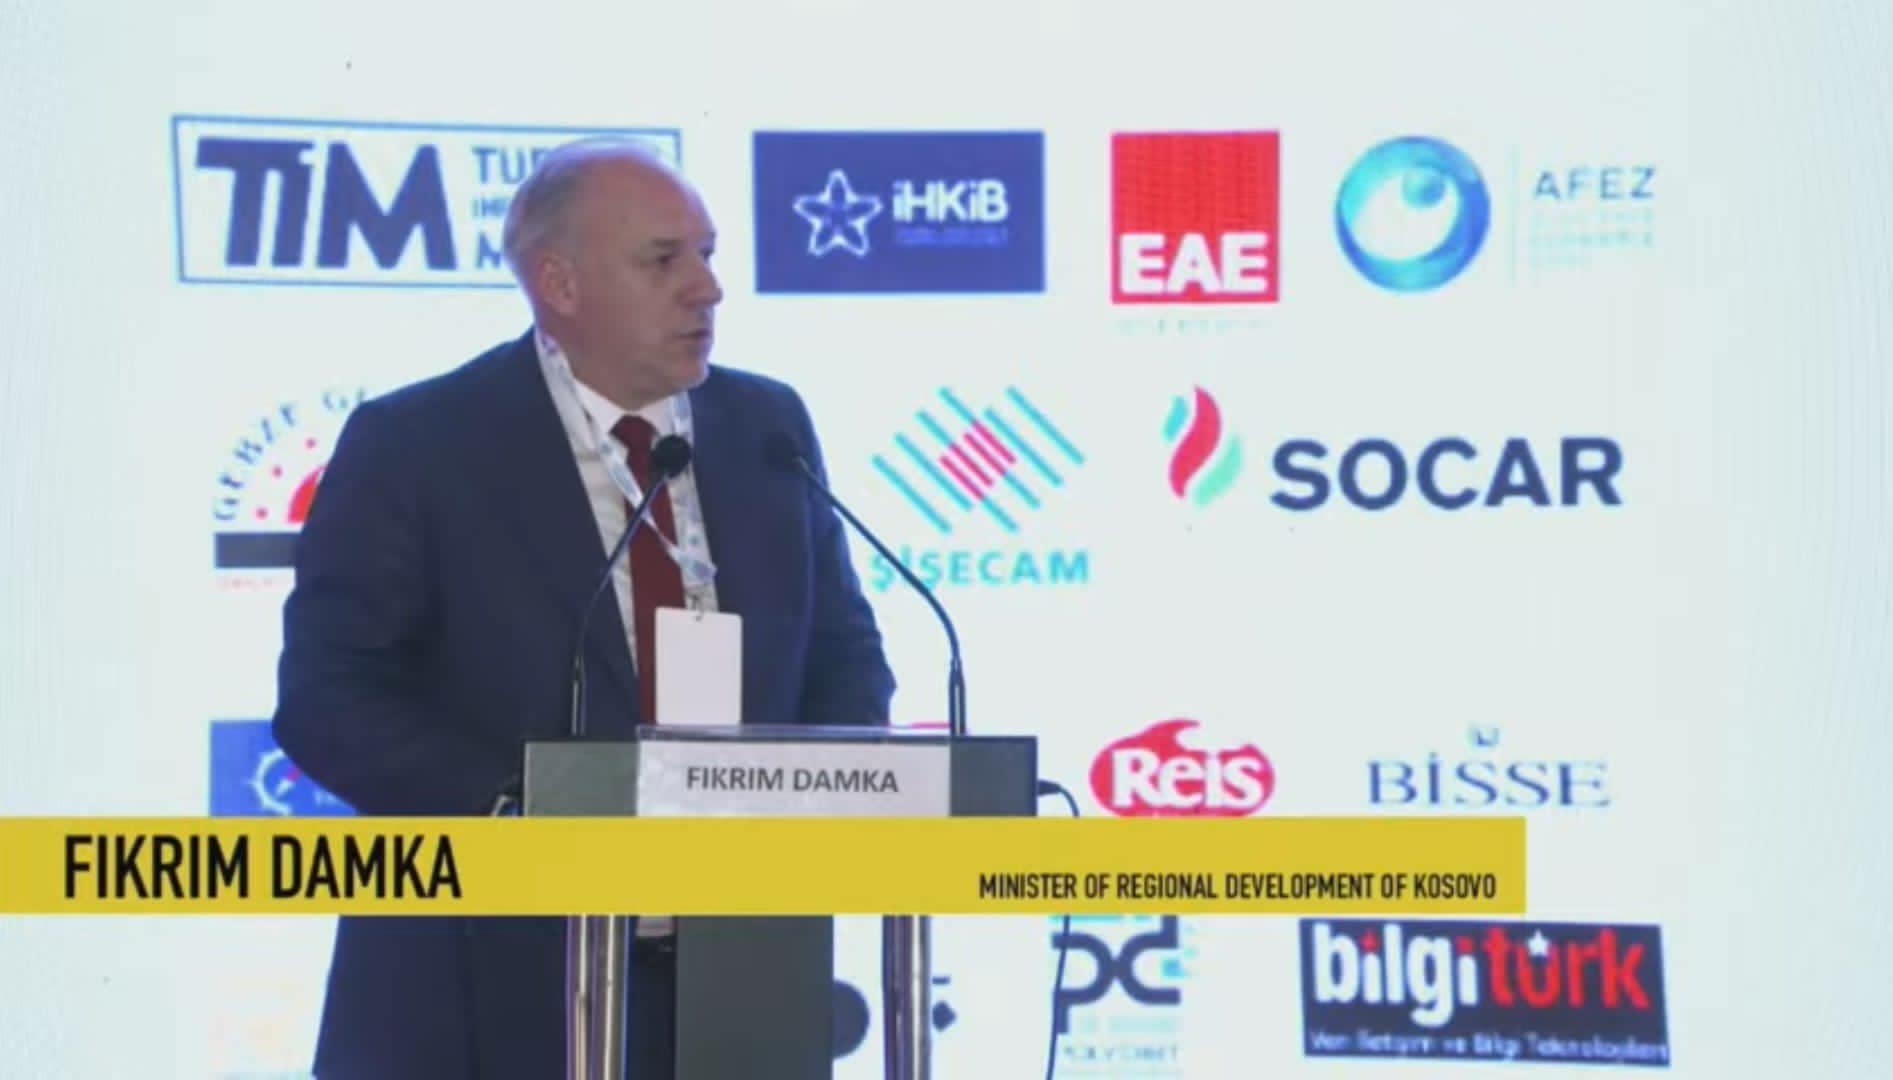 Në kuadër të Samitit të 25-të Ekonomik Euroaziatik të organizuar nga Fondacioni Marmara Group në Turqi, Ministri i Zhvillimit Rajonal z. Fikrim Damka, mori pjesë si folës në panelin “Kriza e Ushqimit dhe Furnizimi i Mallrave”.